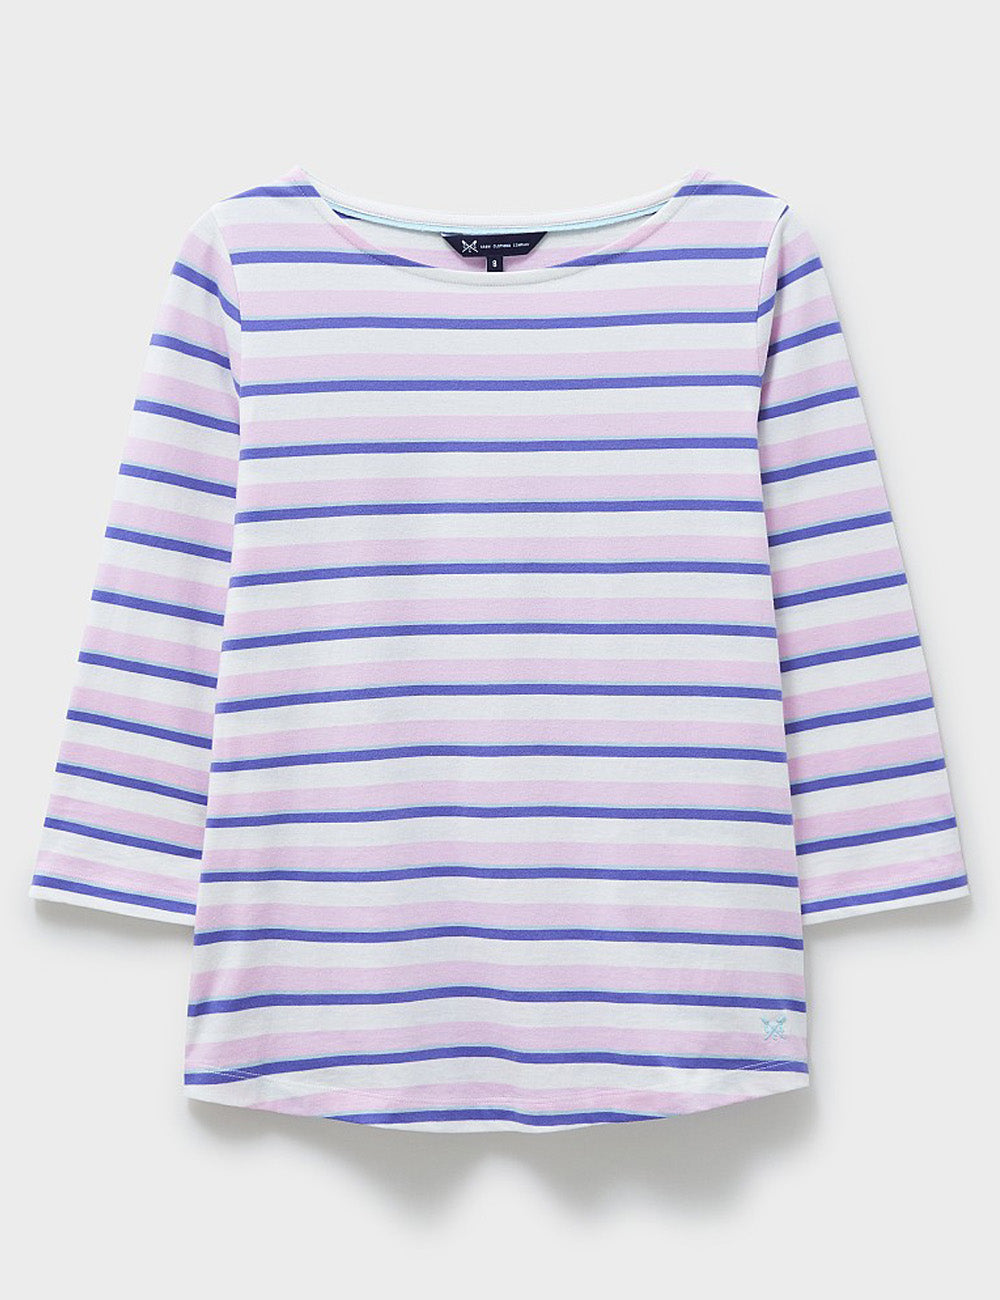 Crew Clothing Essential Breton T-Shirt - Lilac Multi